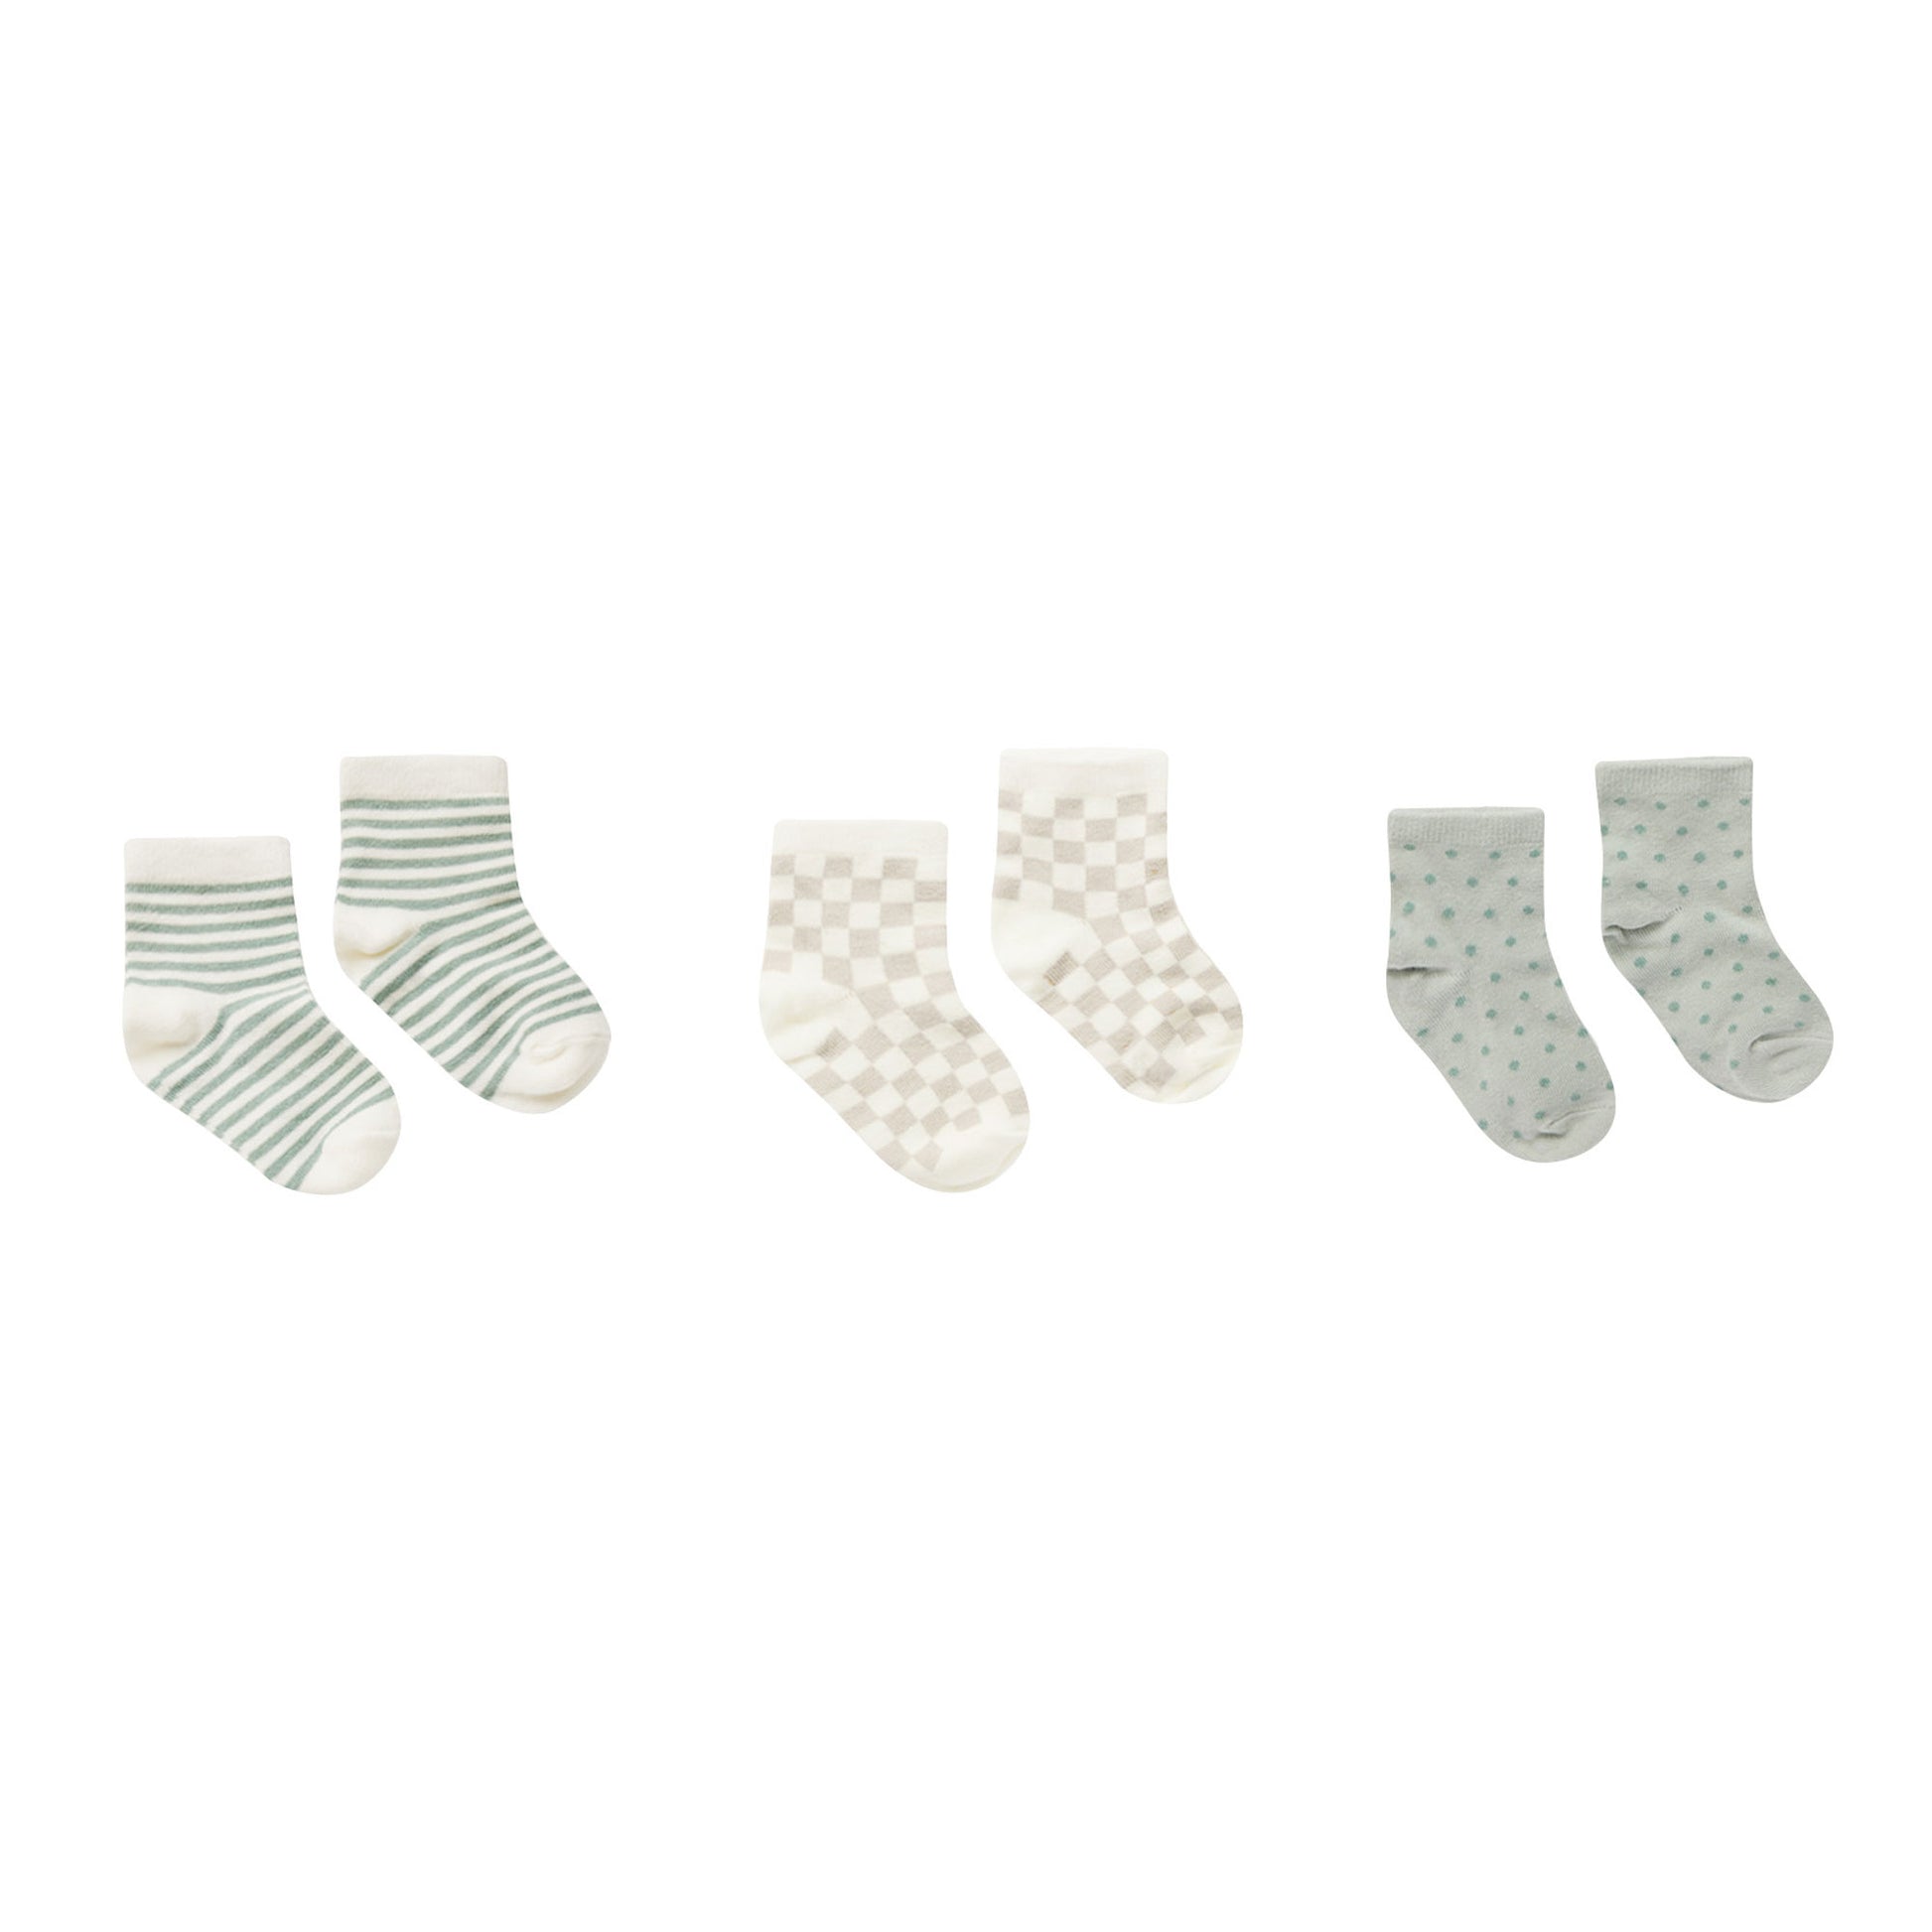 Rylee and Cru Printed Socks - Summer Stripe / Dove Check / Polka Dot